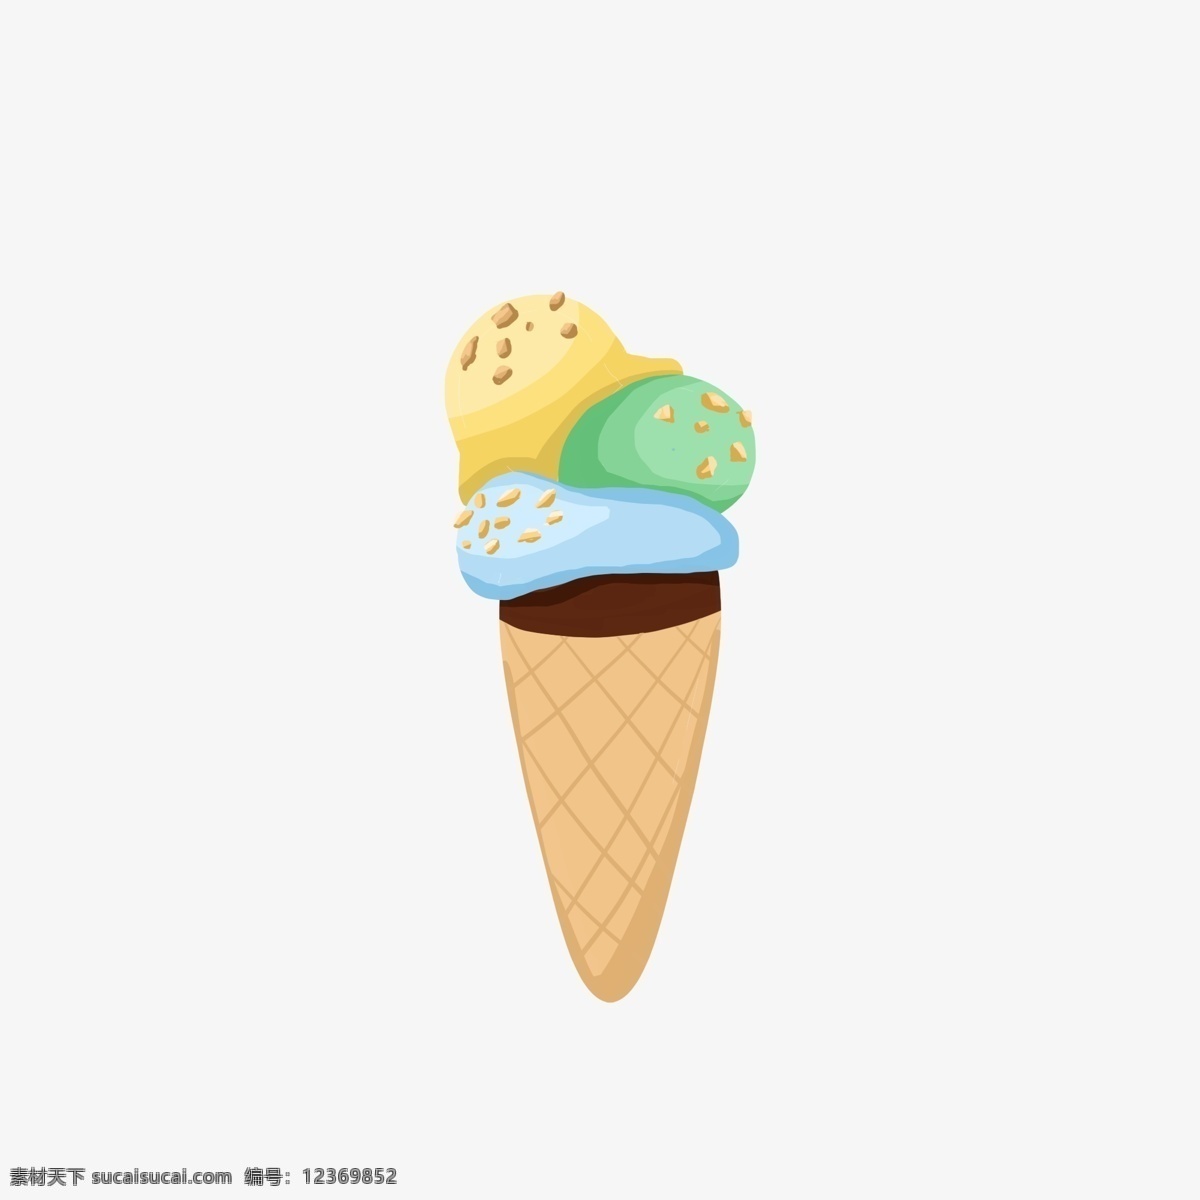 简约 手绘 冰 激 淋 雪糕 免 抠 元素 冷饮 冰激淋 海报 插画 黄色 蓝色 绿色 脆皮 巧克力色 美食 食物